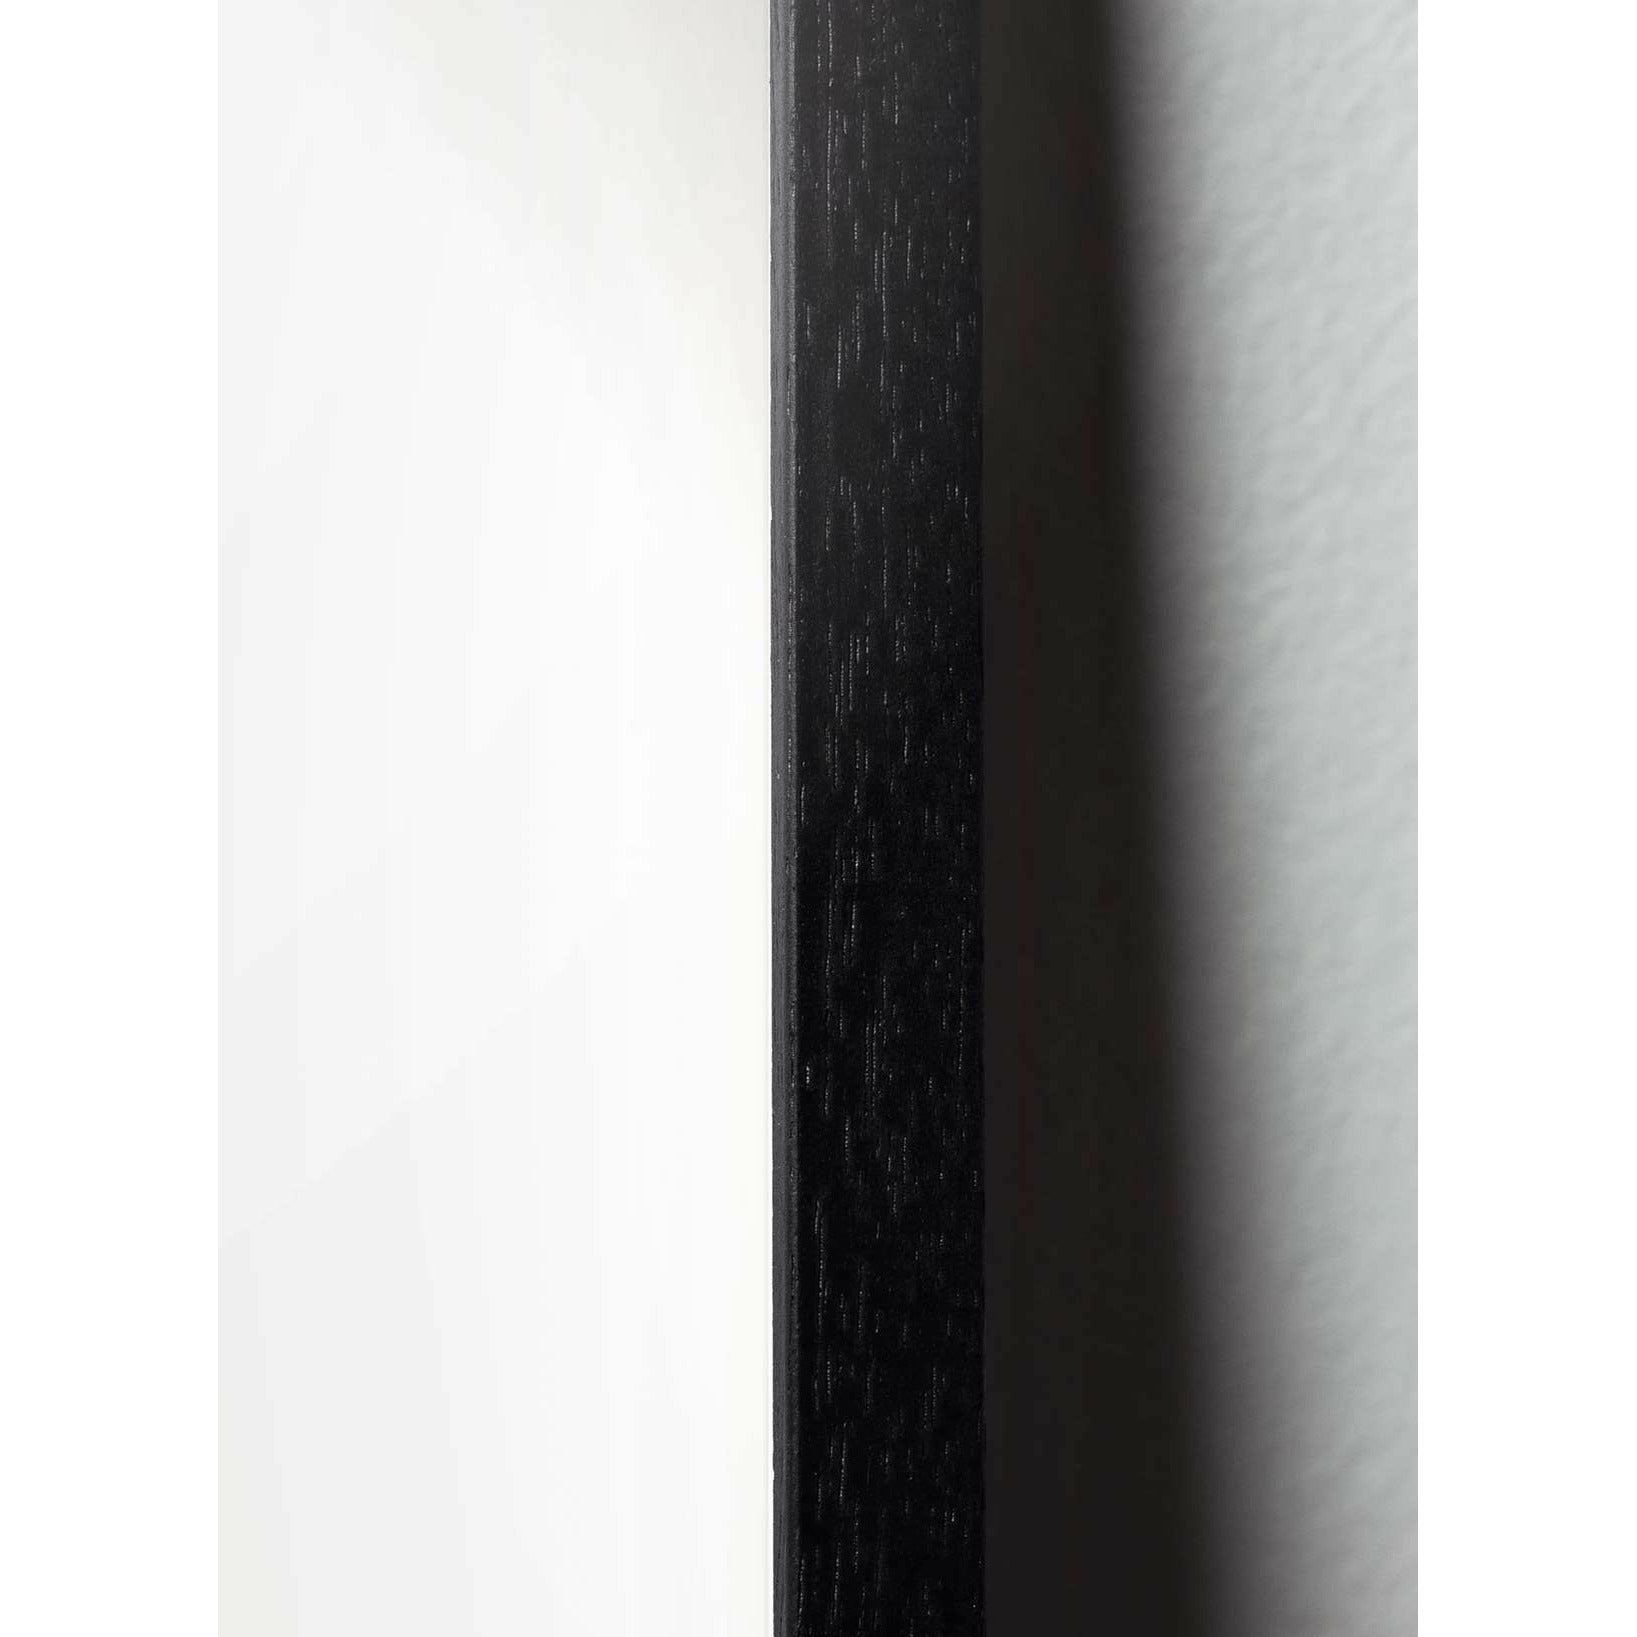 Pomysły plakat klipu na papierze łabędzia, rama w czarnym lakierowanym drewnie 70x100 cm, różowe tło